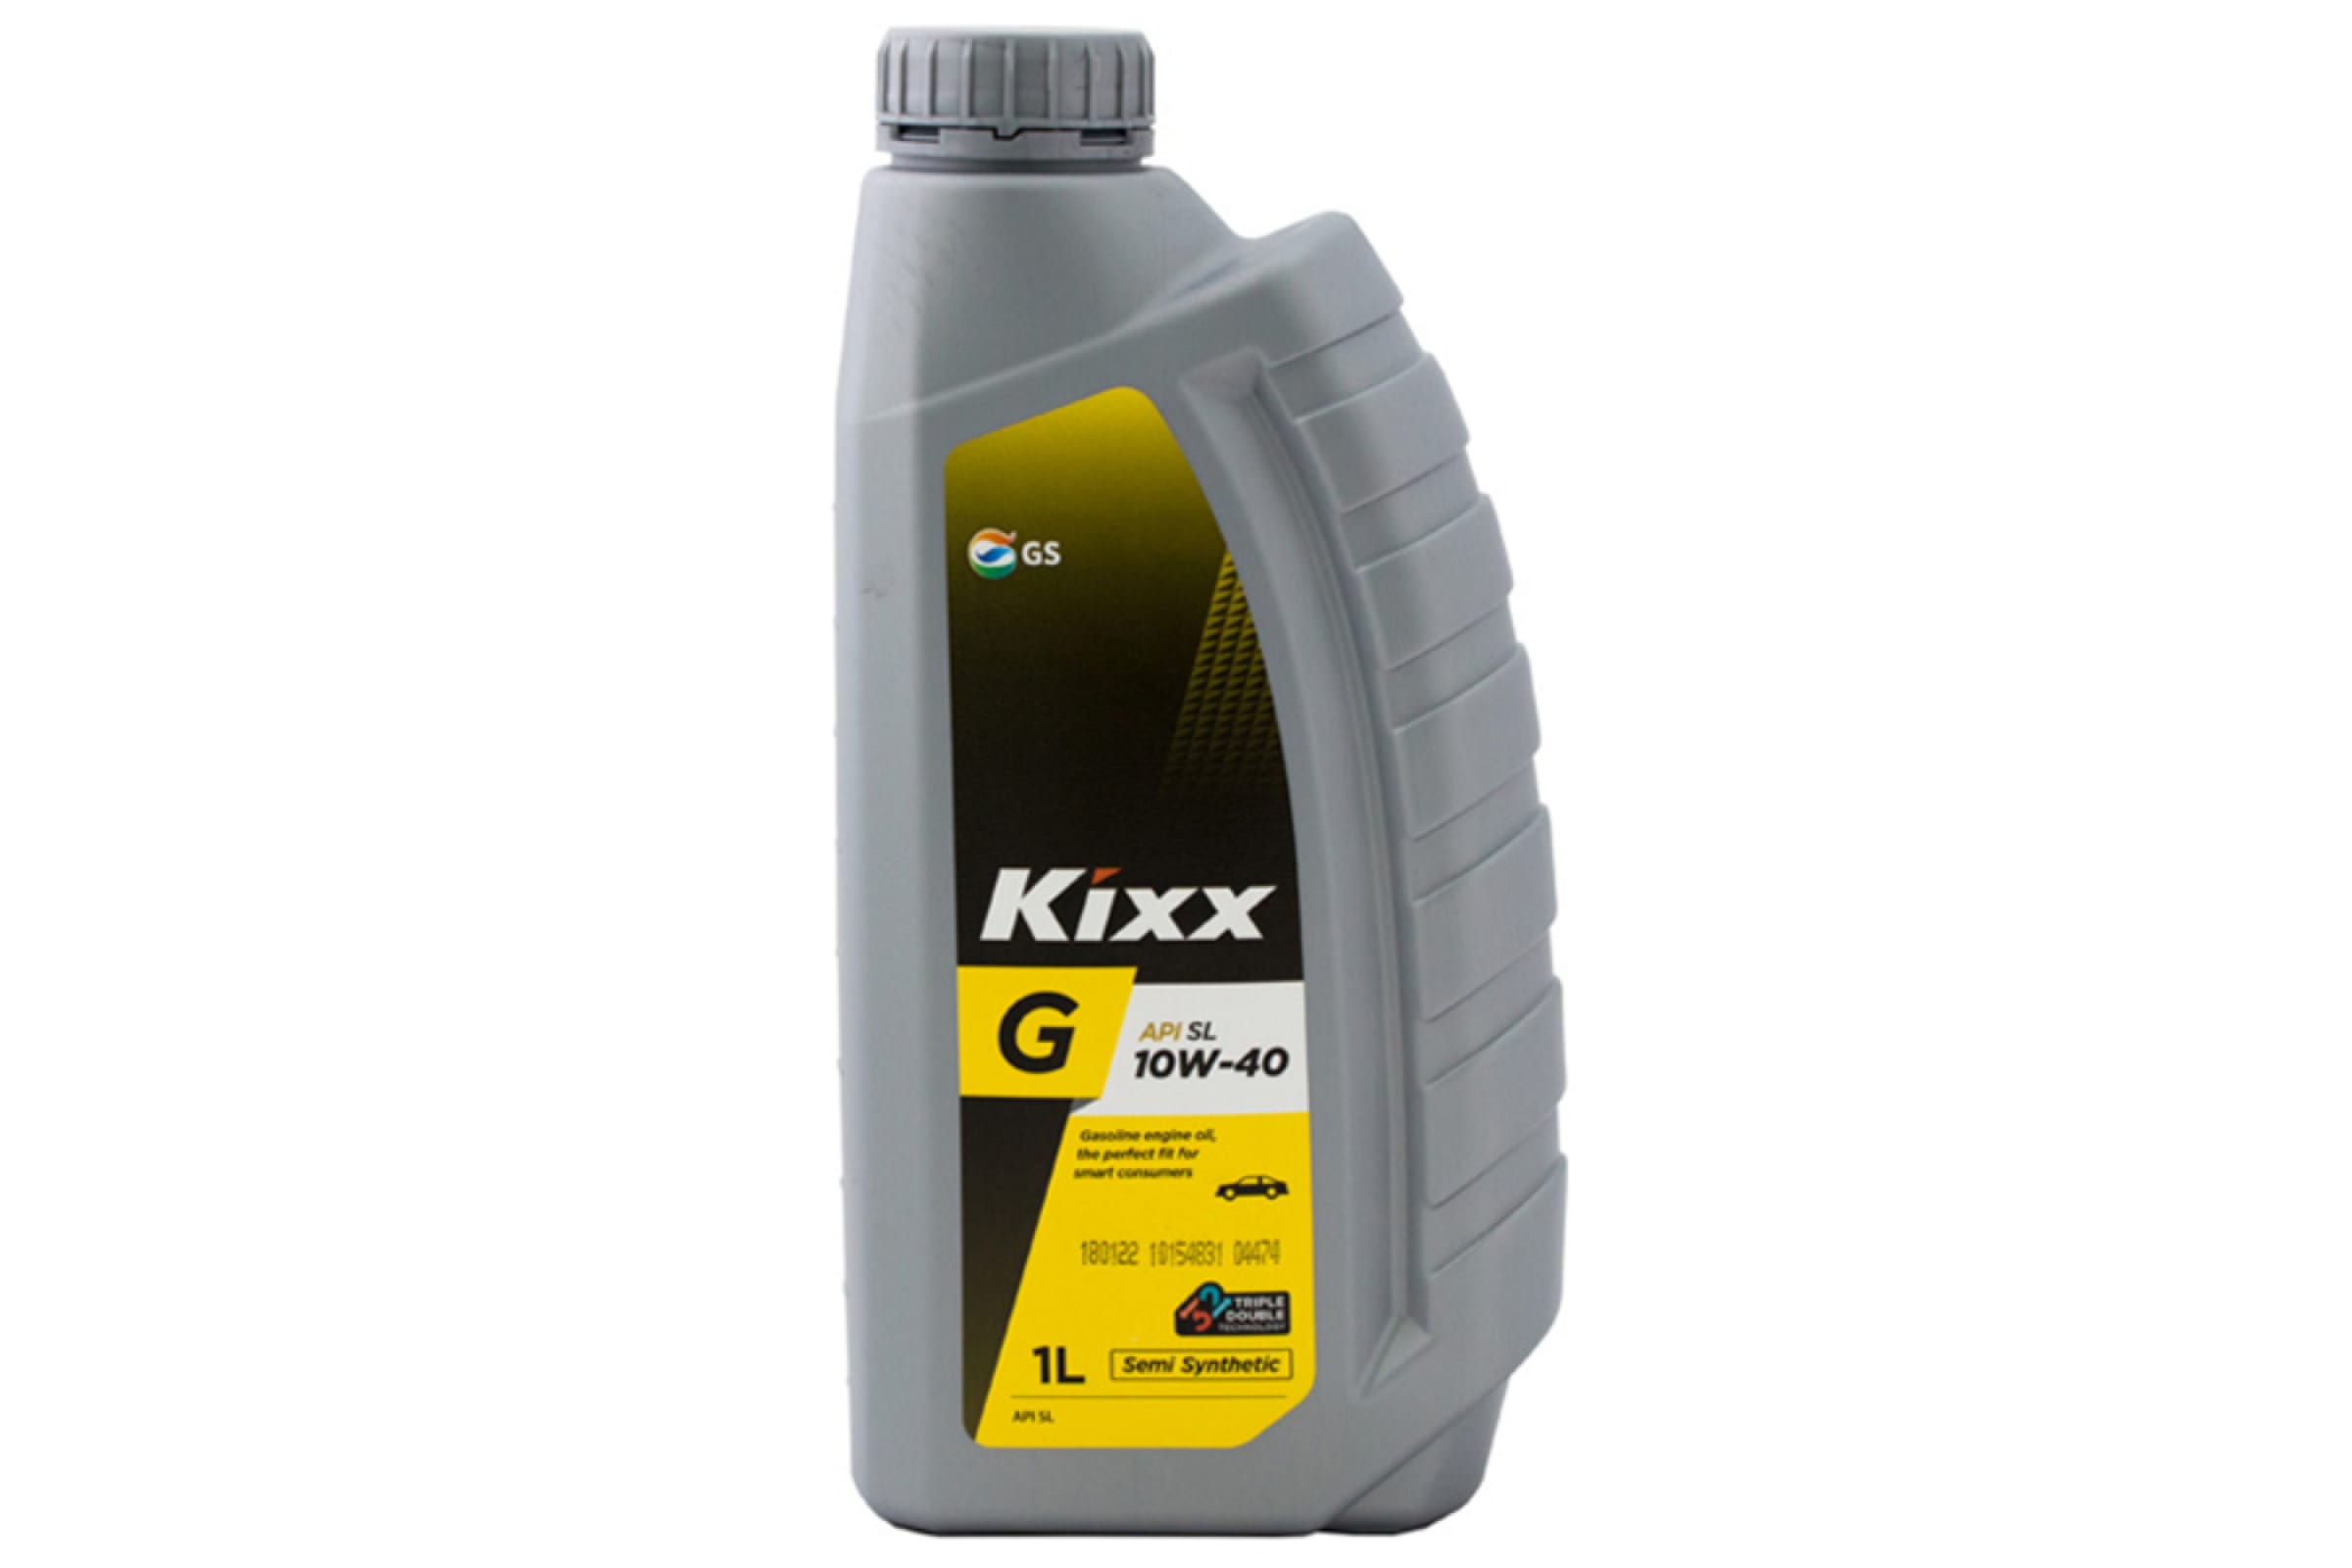 KIXX G SL 10W-40 1L